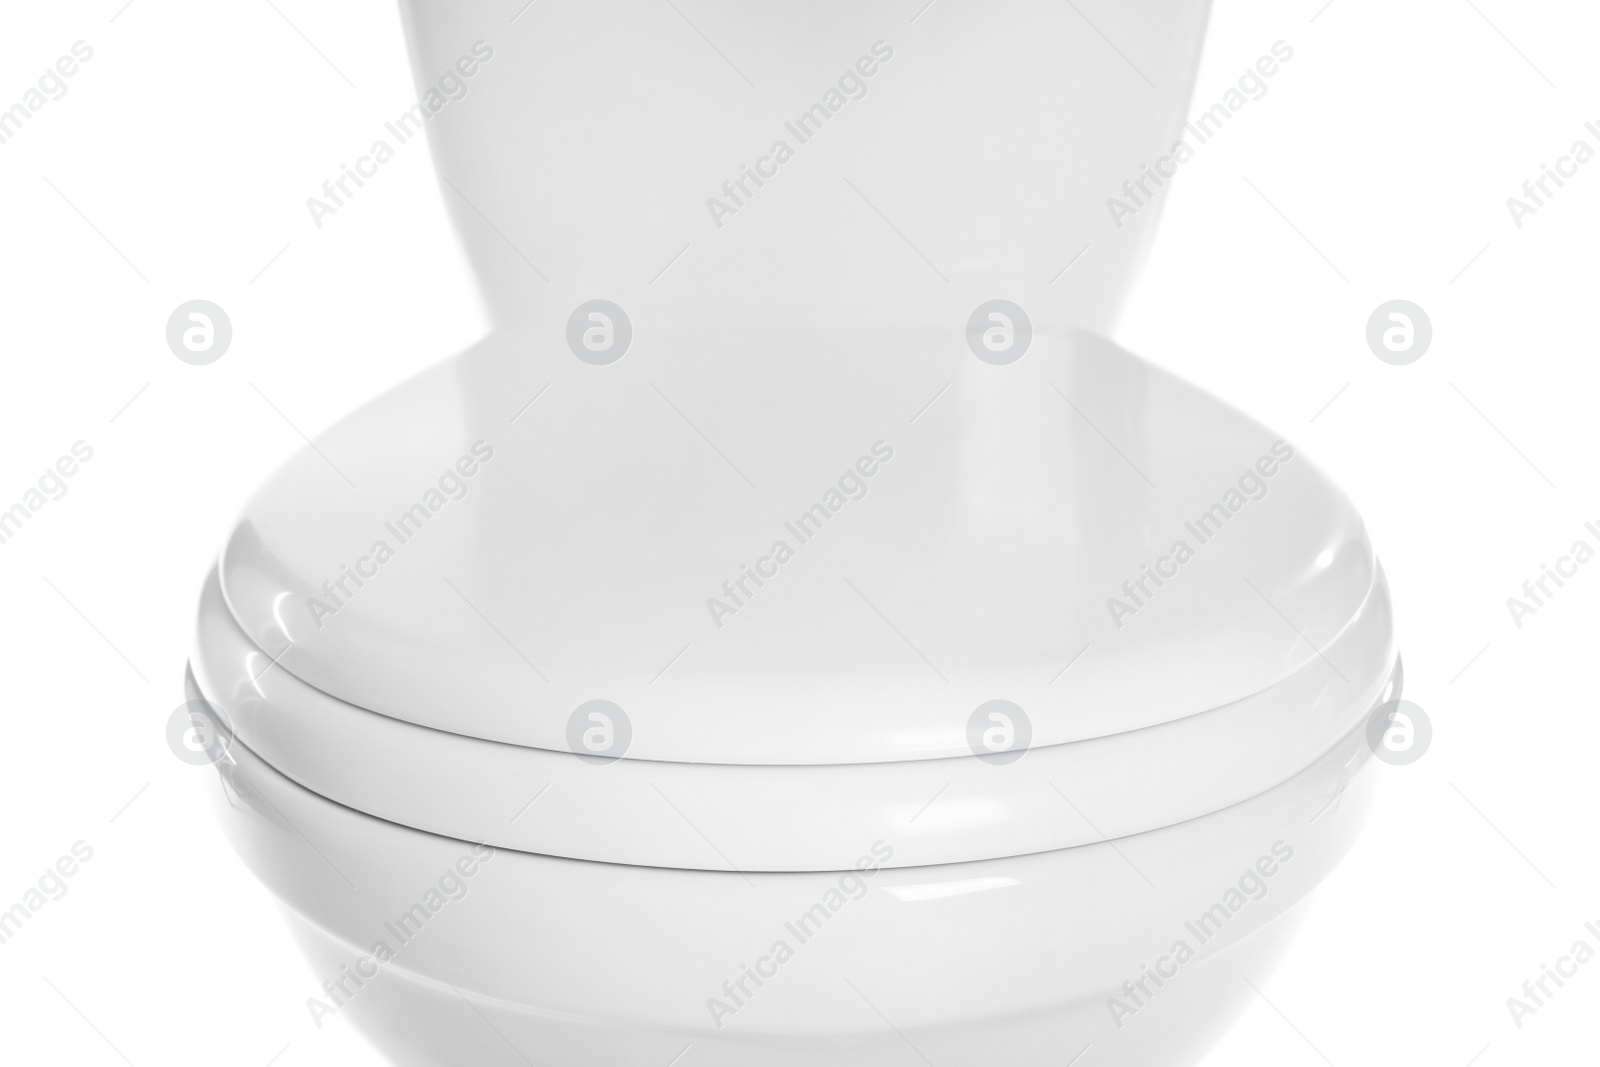 Photo of New ceramic toilet bowl on white background, closeup